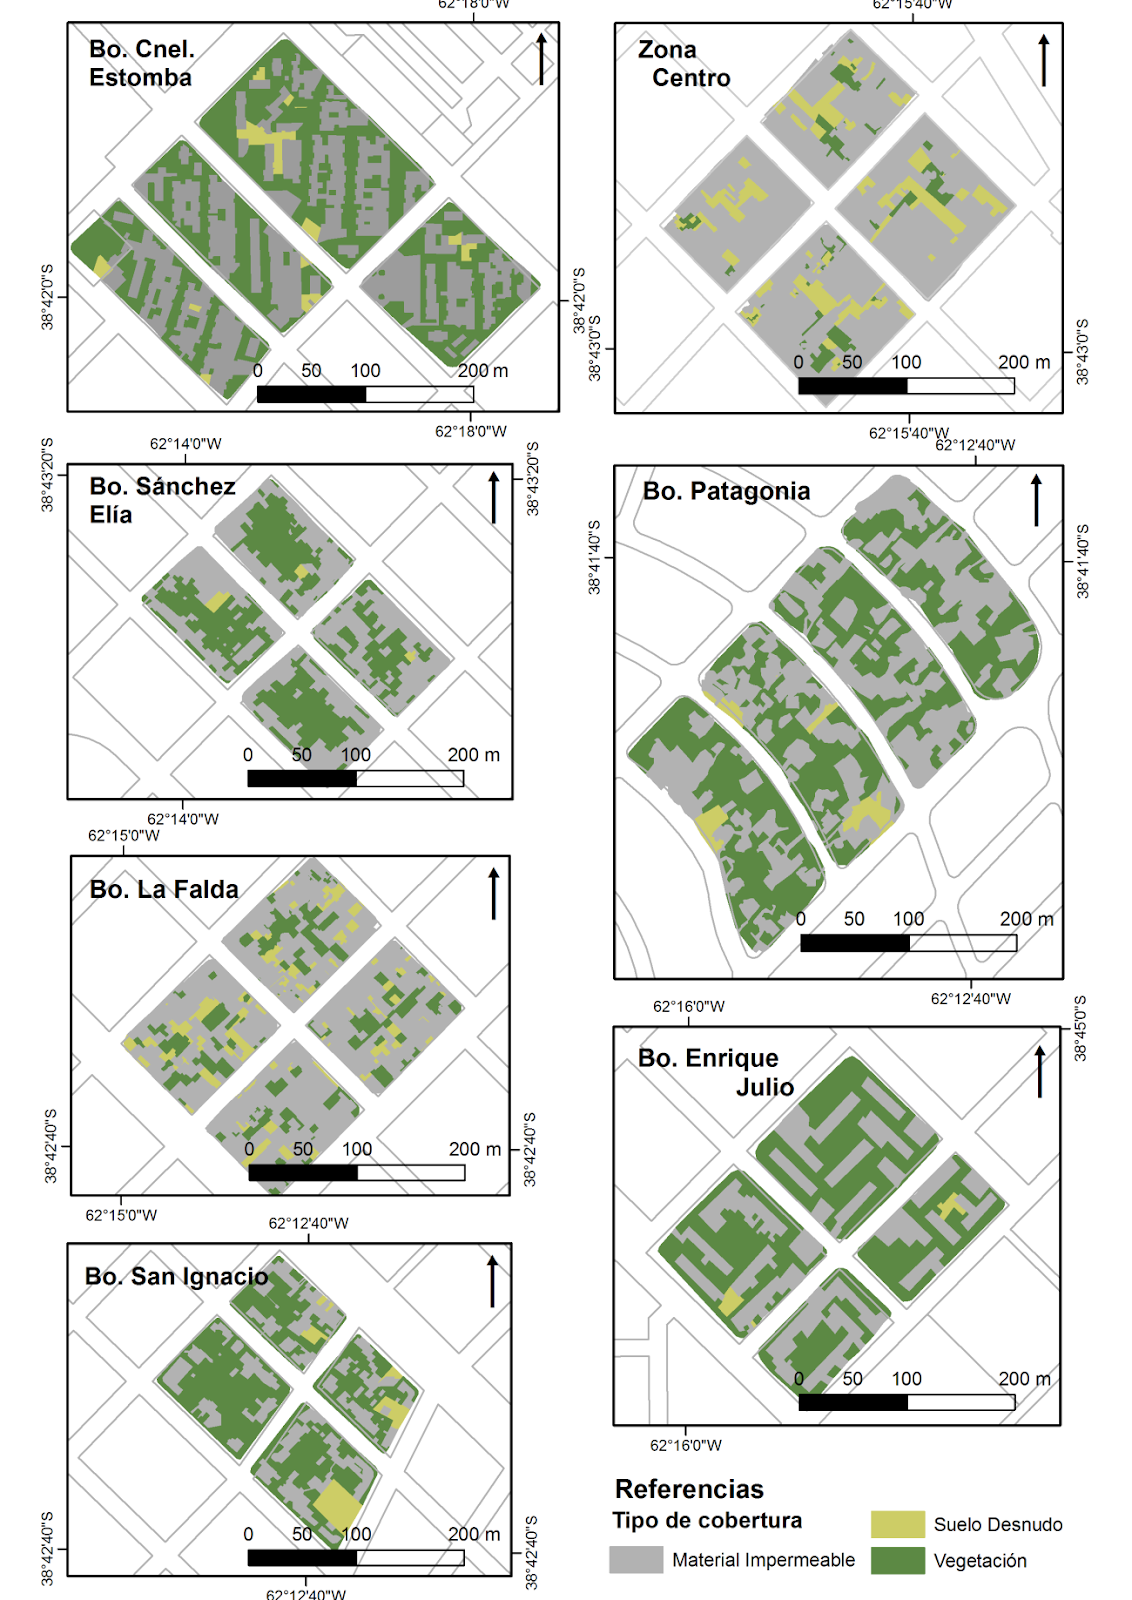 Distribución  de los tipos de cobertura de la superficie en los distritos analizados